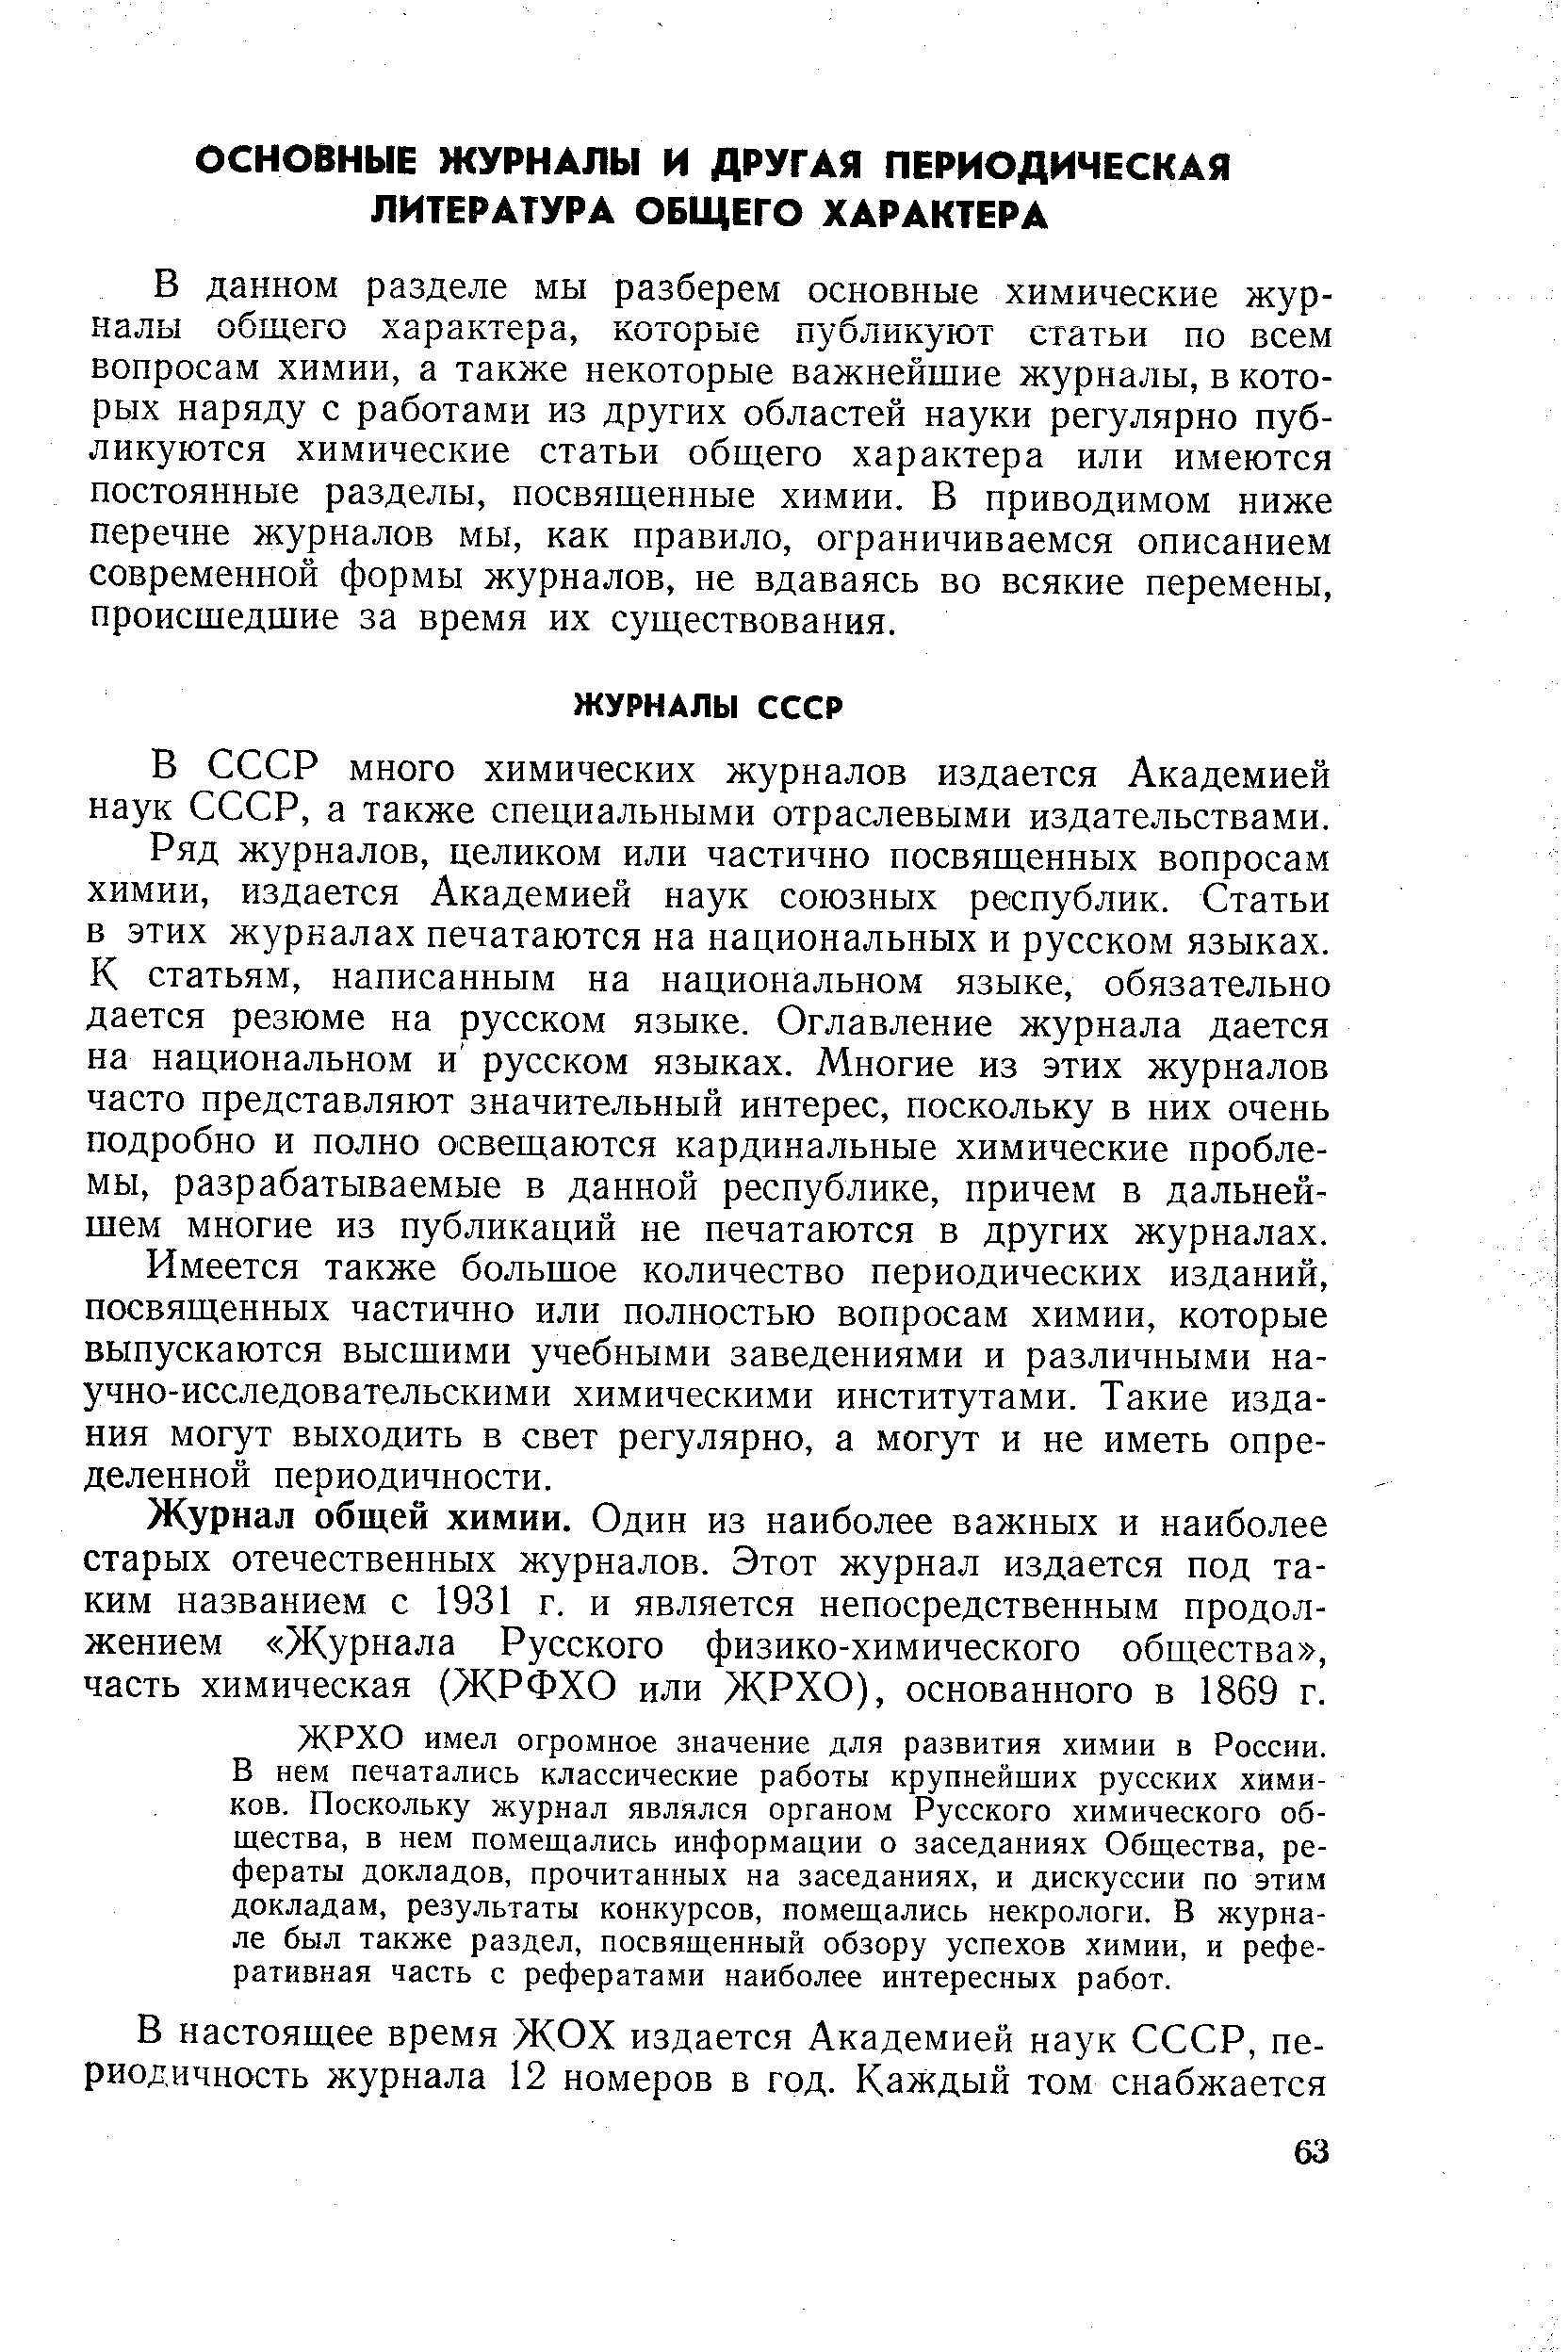 В СССР много химических журналов издается Академией наук СССР, а также специальными отраслевыми издательствами.